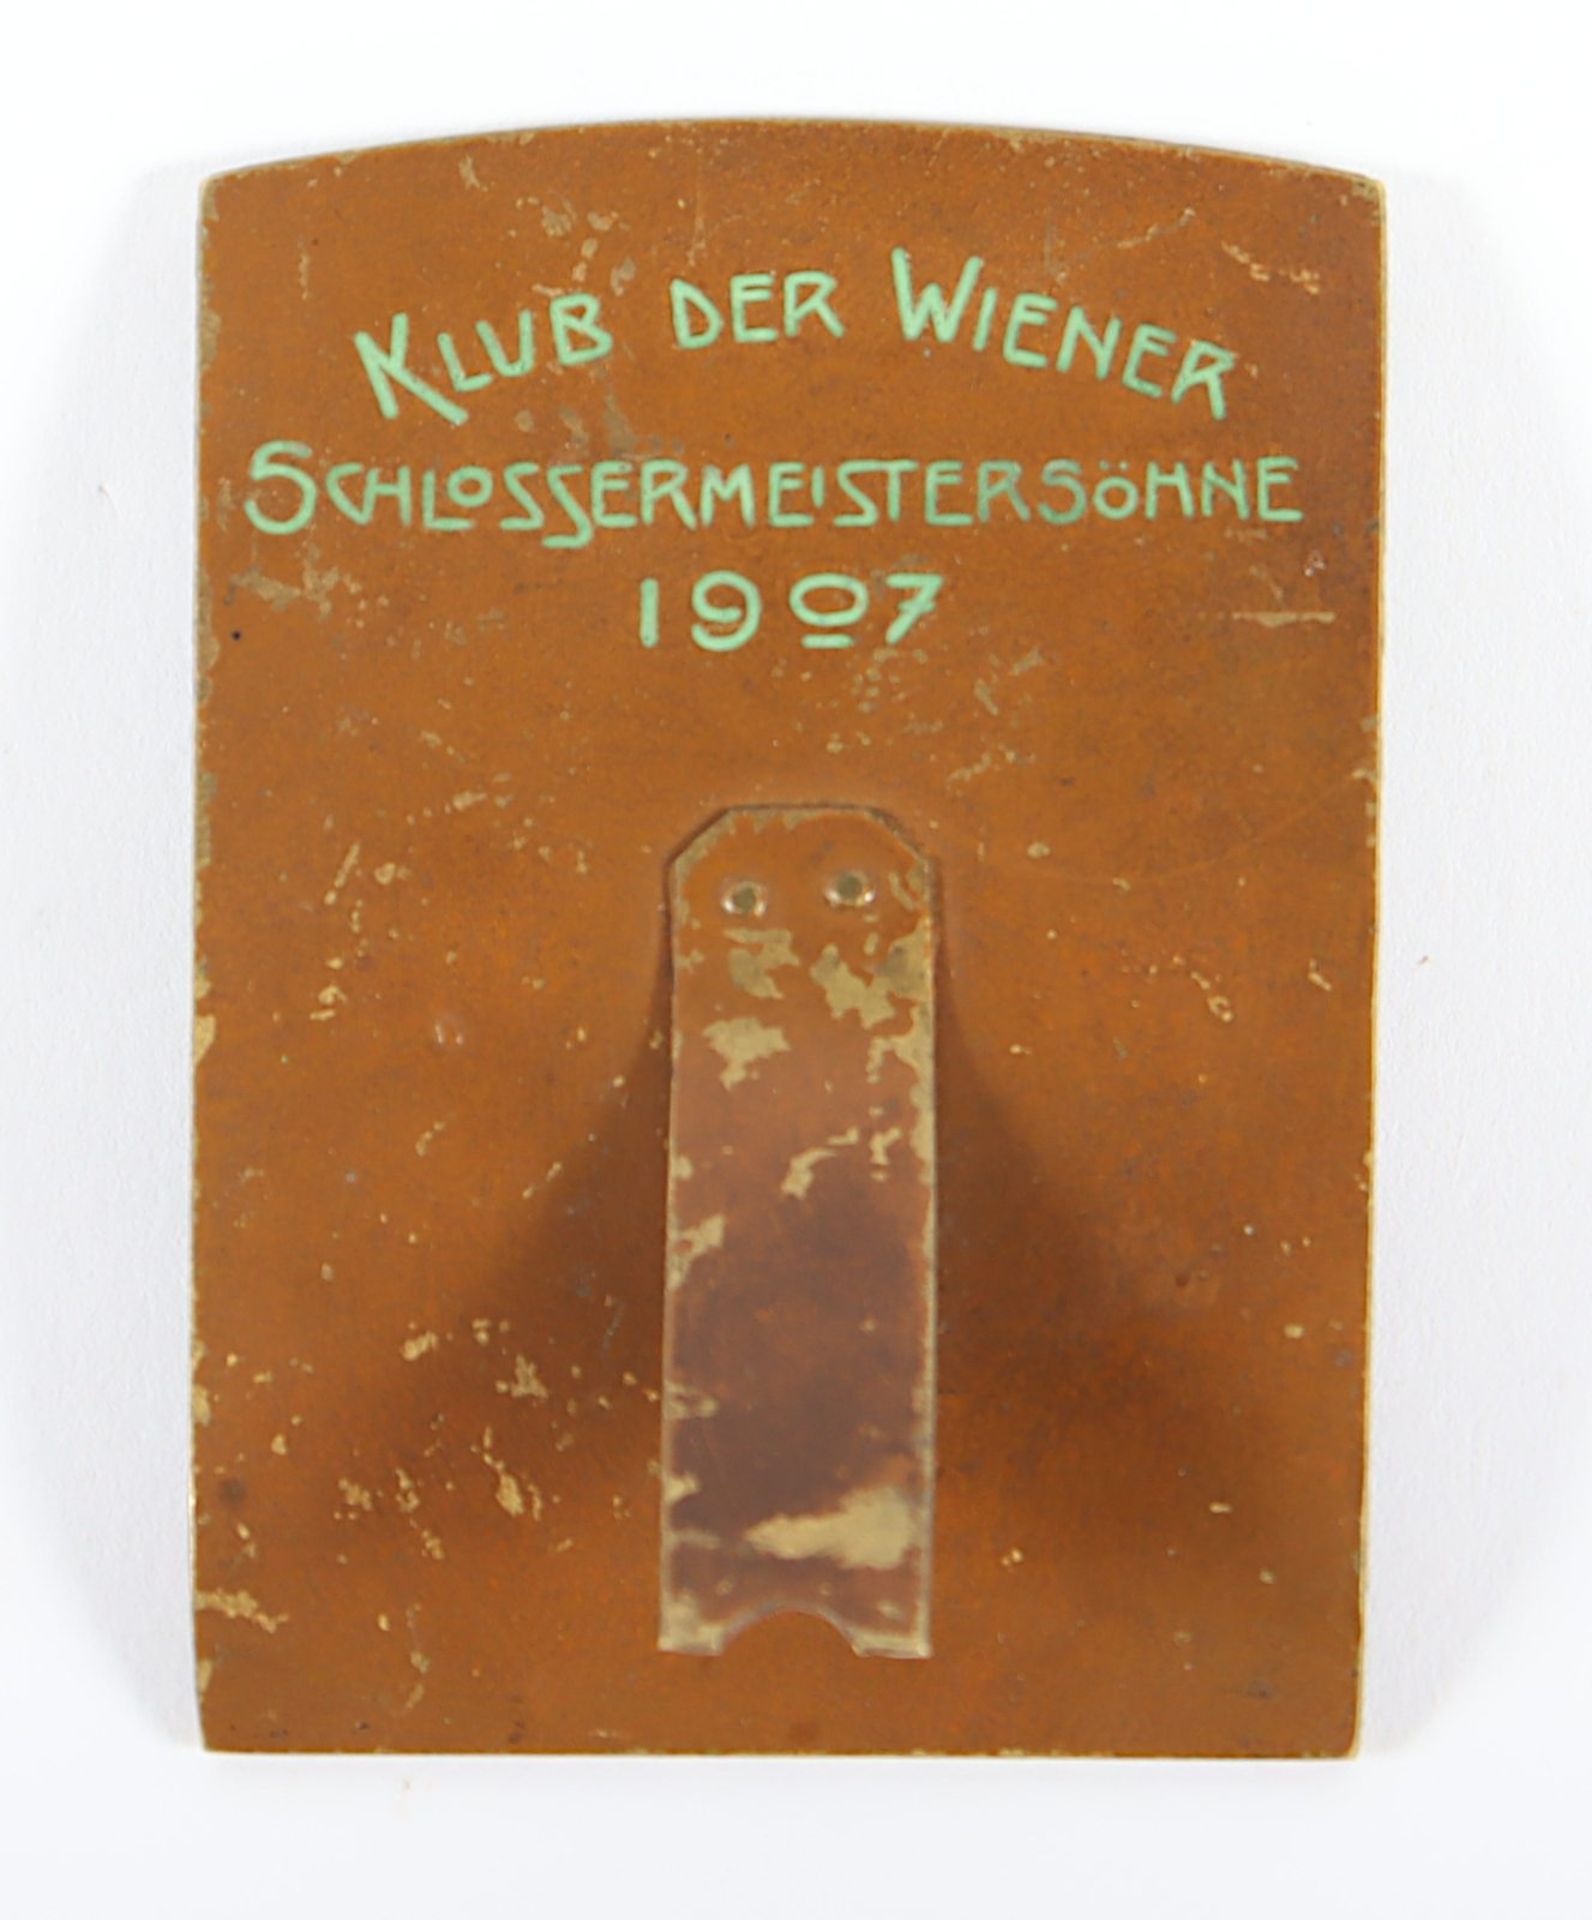 Plakette "Klub der Wiener Schlossermeistersöhne", Bronze, 1907 - Image 2 of 2